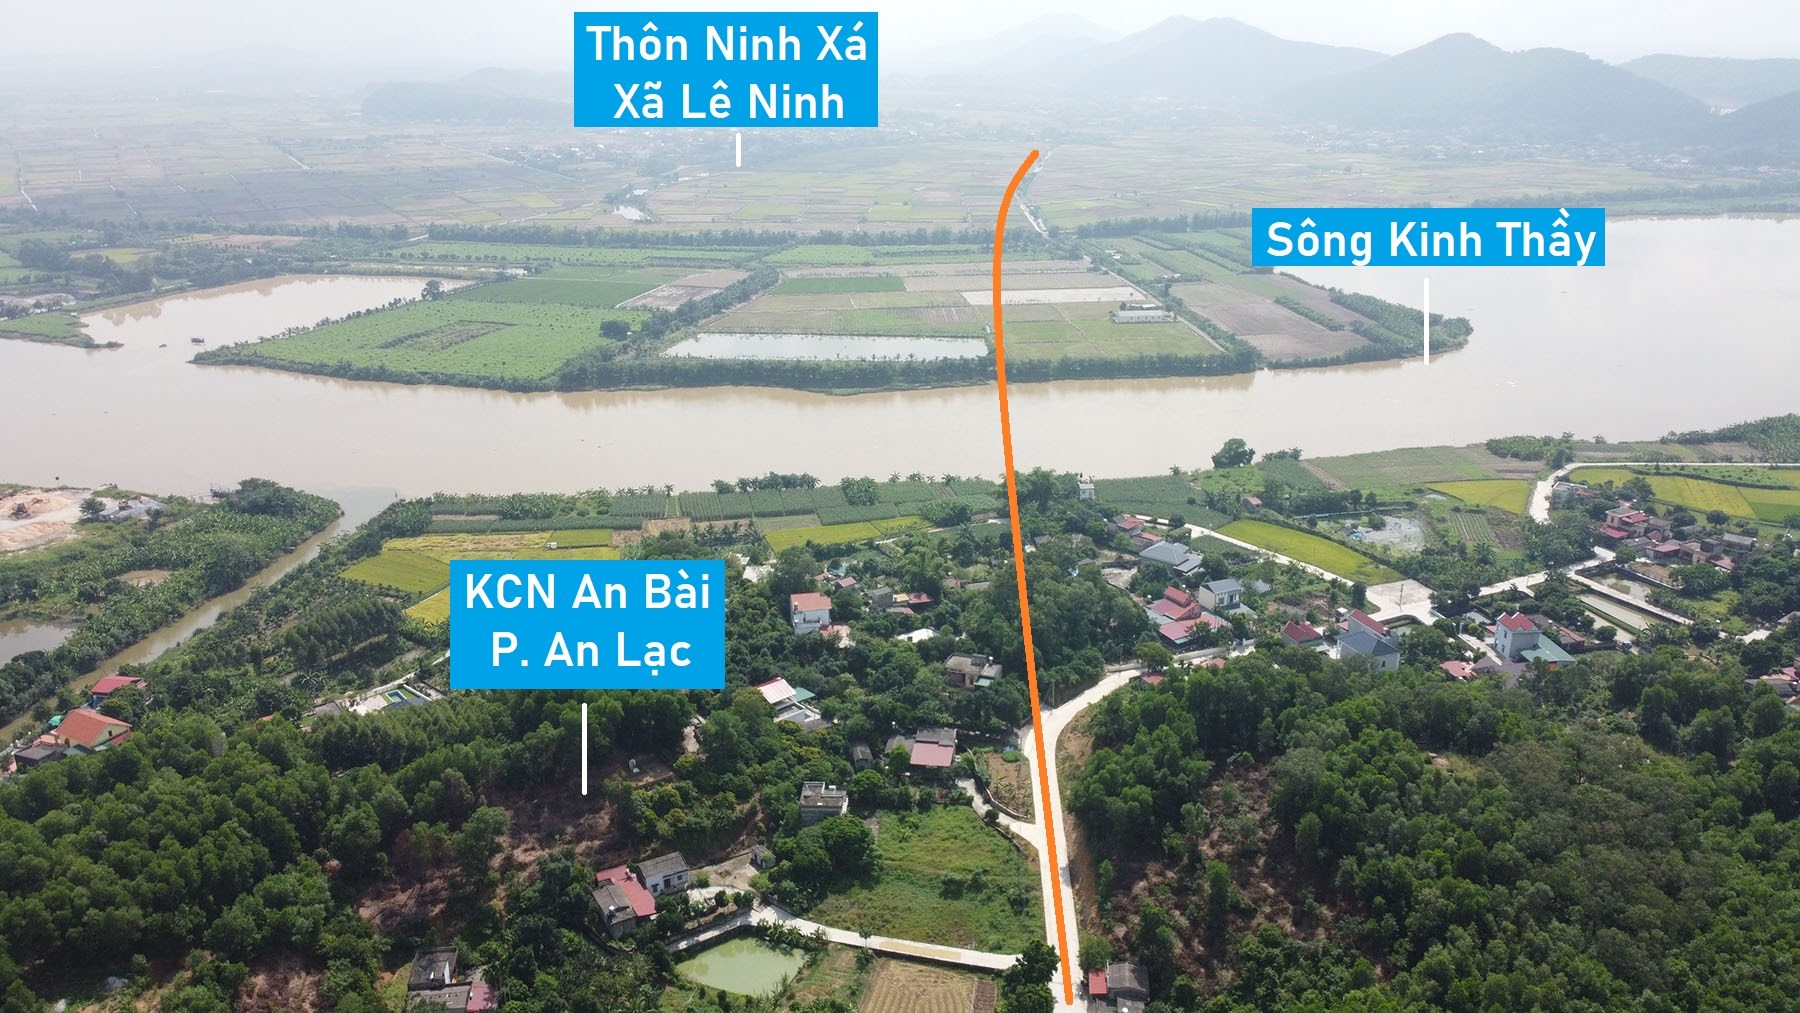 Toàn cảnh vị trí dự kiến quy hoạch cầu vượt sông Kinh Thầy nối TP Chí Linh - TX Kinh Môn, Hải Dương